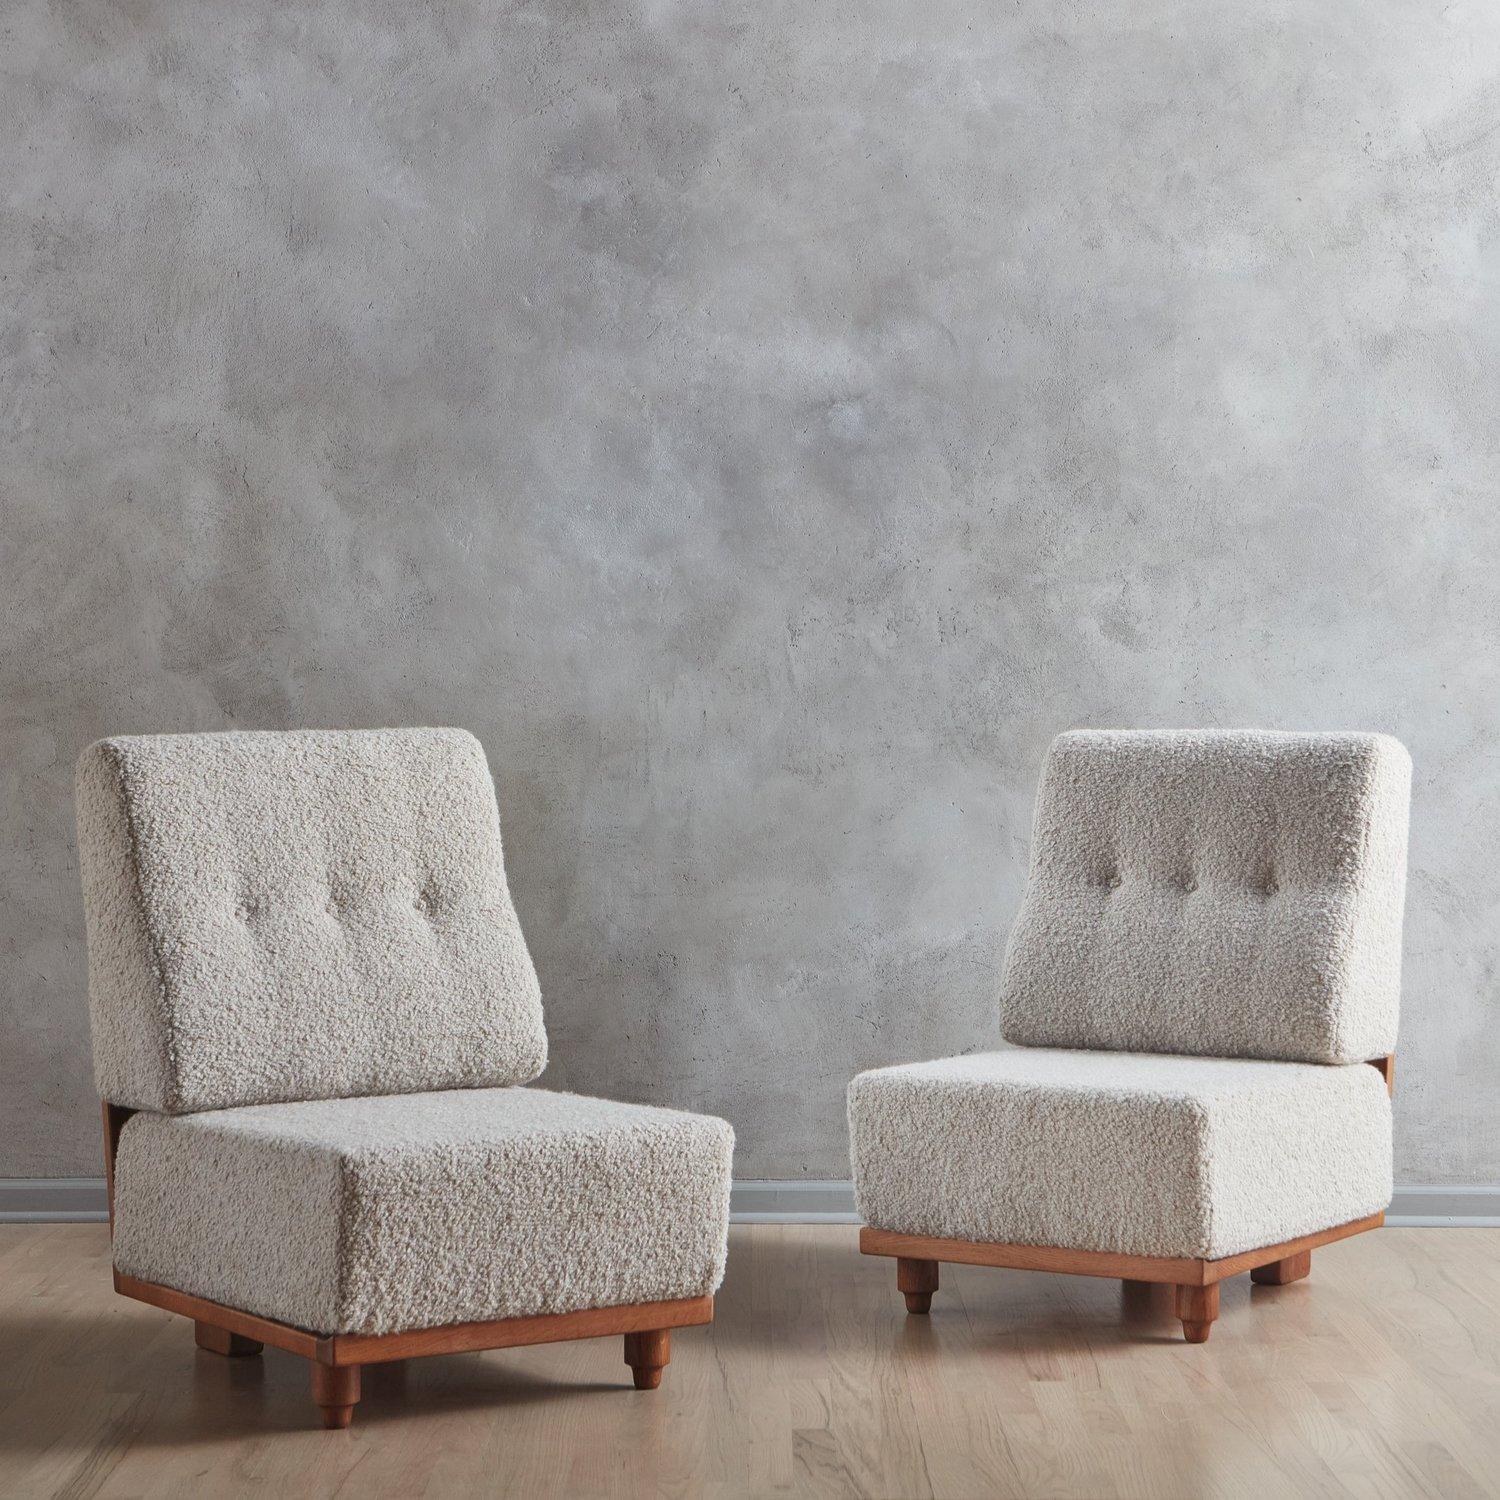 Une paire de chaises longues 'Elmyre' de Guillerme et Chambron. Ces chaises ont des cadres sculpturaux en chêne avec des détails découpés et s'assoient au ras du sol. Ils sont dotés d'épais coussins déhoussables nouvellement retapissés dans un